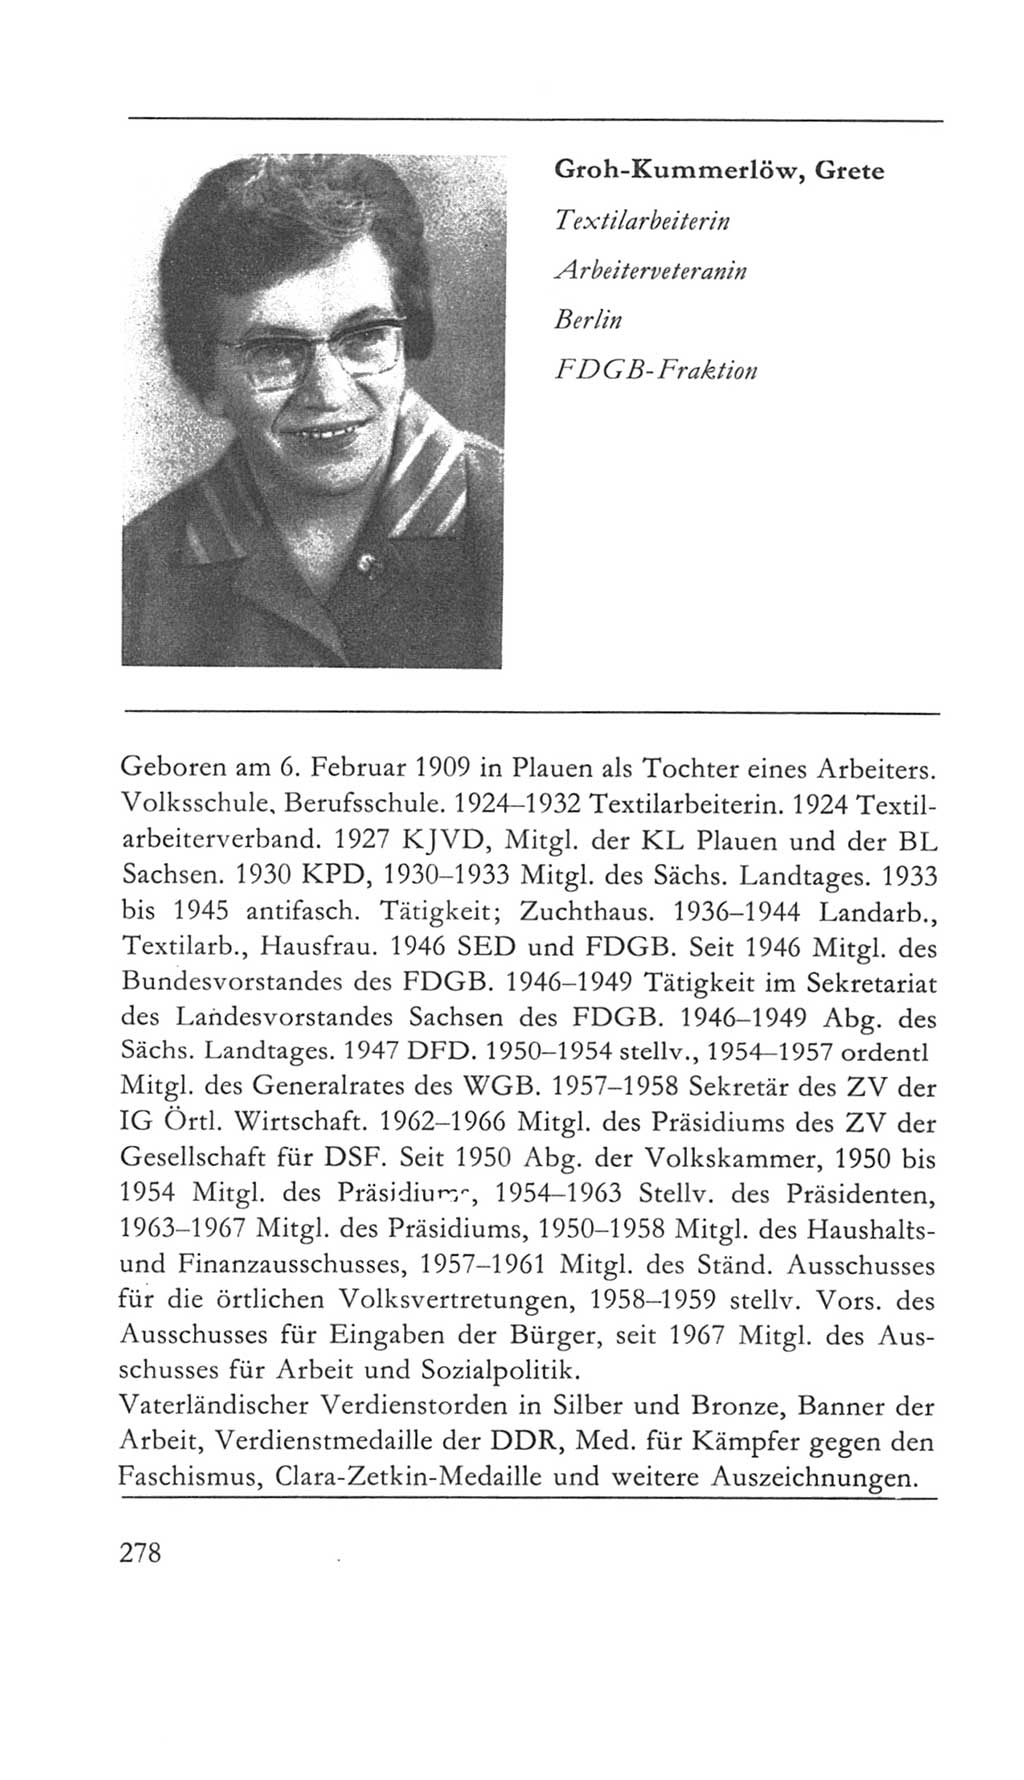 Volkskammer (VK) der Deutschen Demokratischen Republik (DDR) 5. Wahlperiode 1967-1971, Seite 278 (VK. DDR 5. WP. 1967-1971, S. 278)